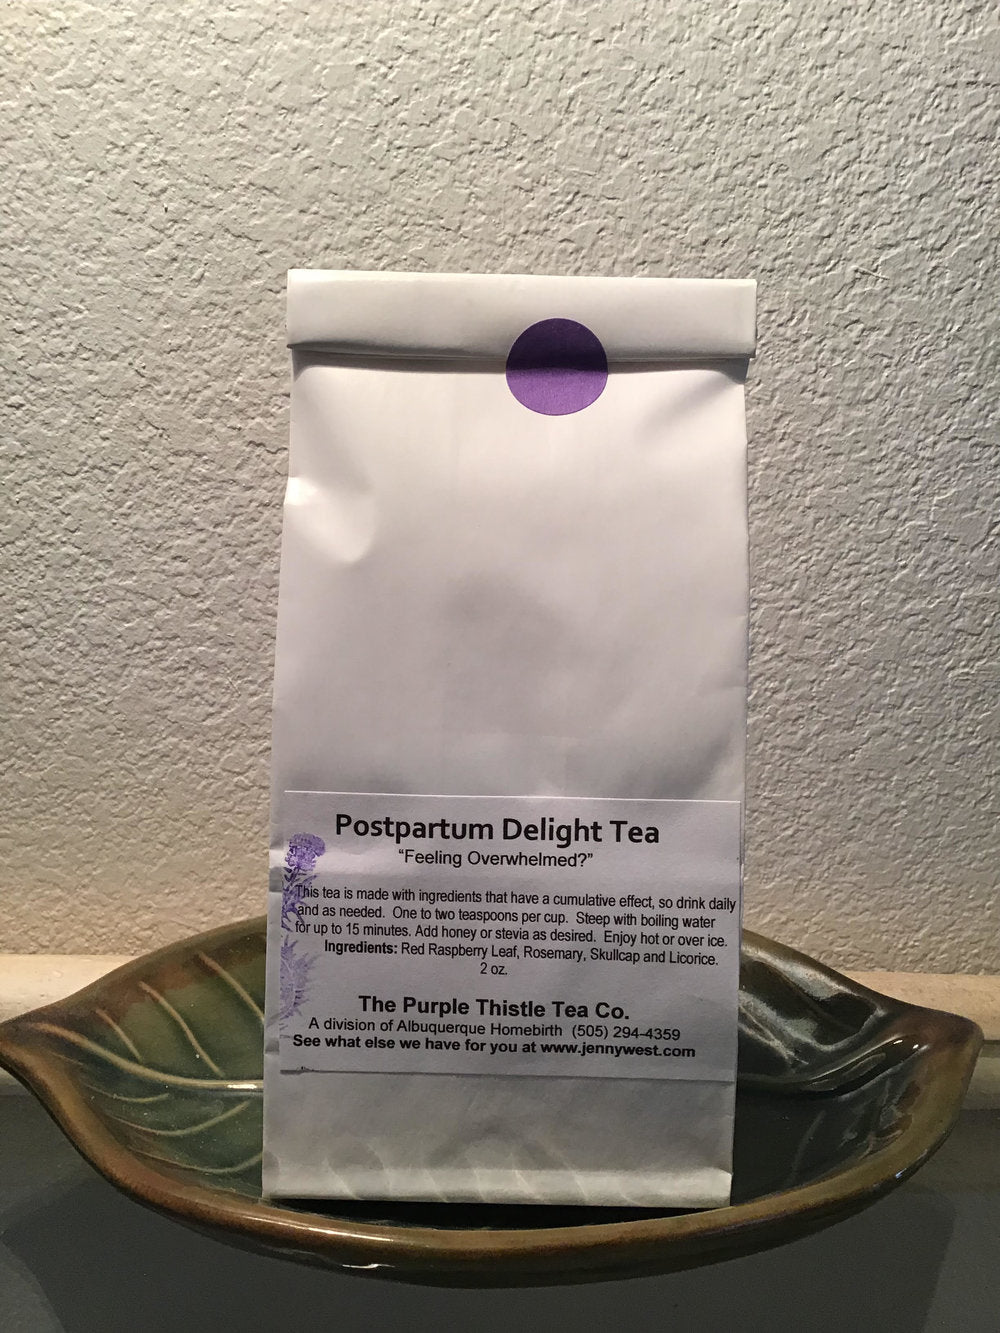 Postpartum Delight Tea